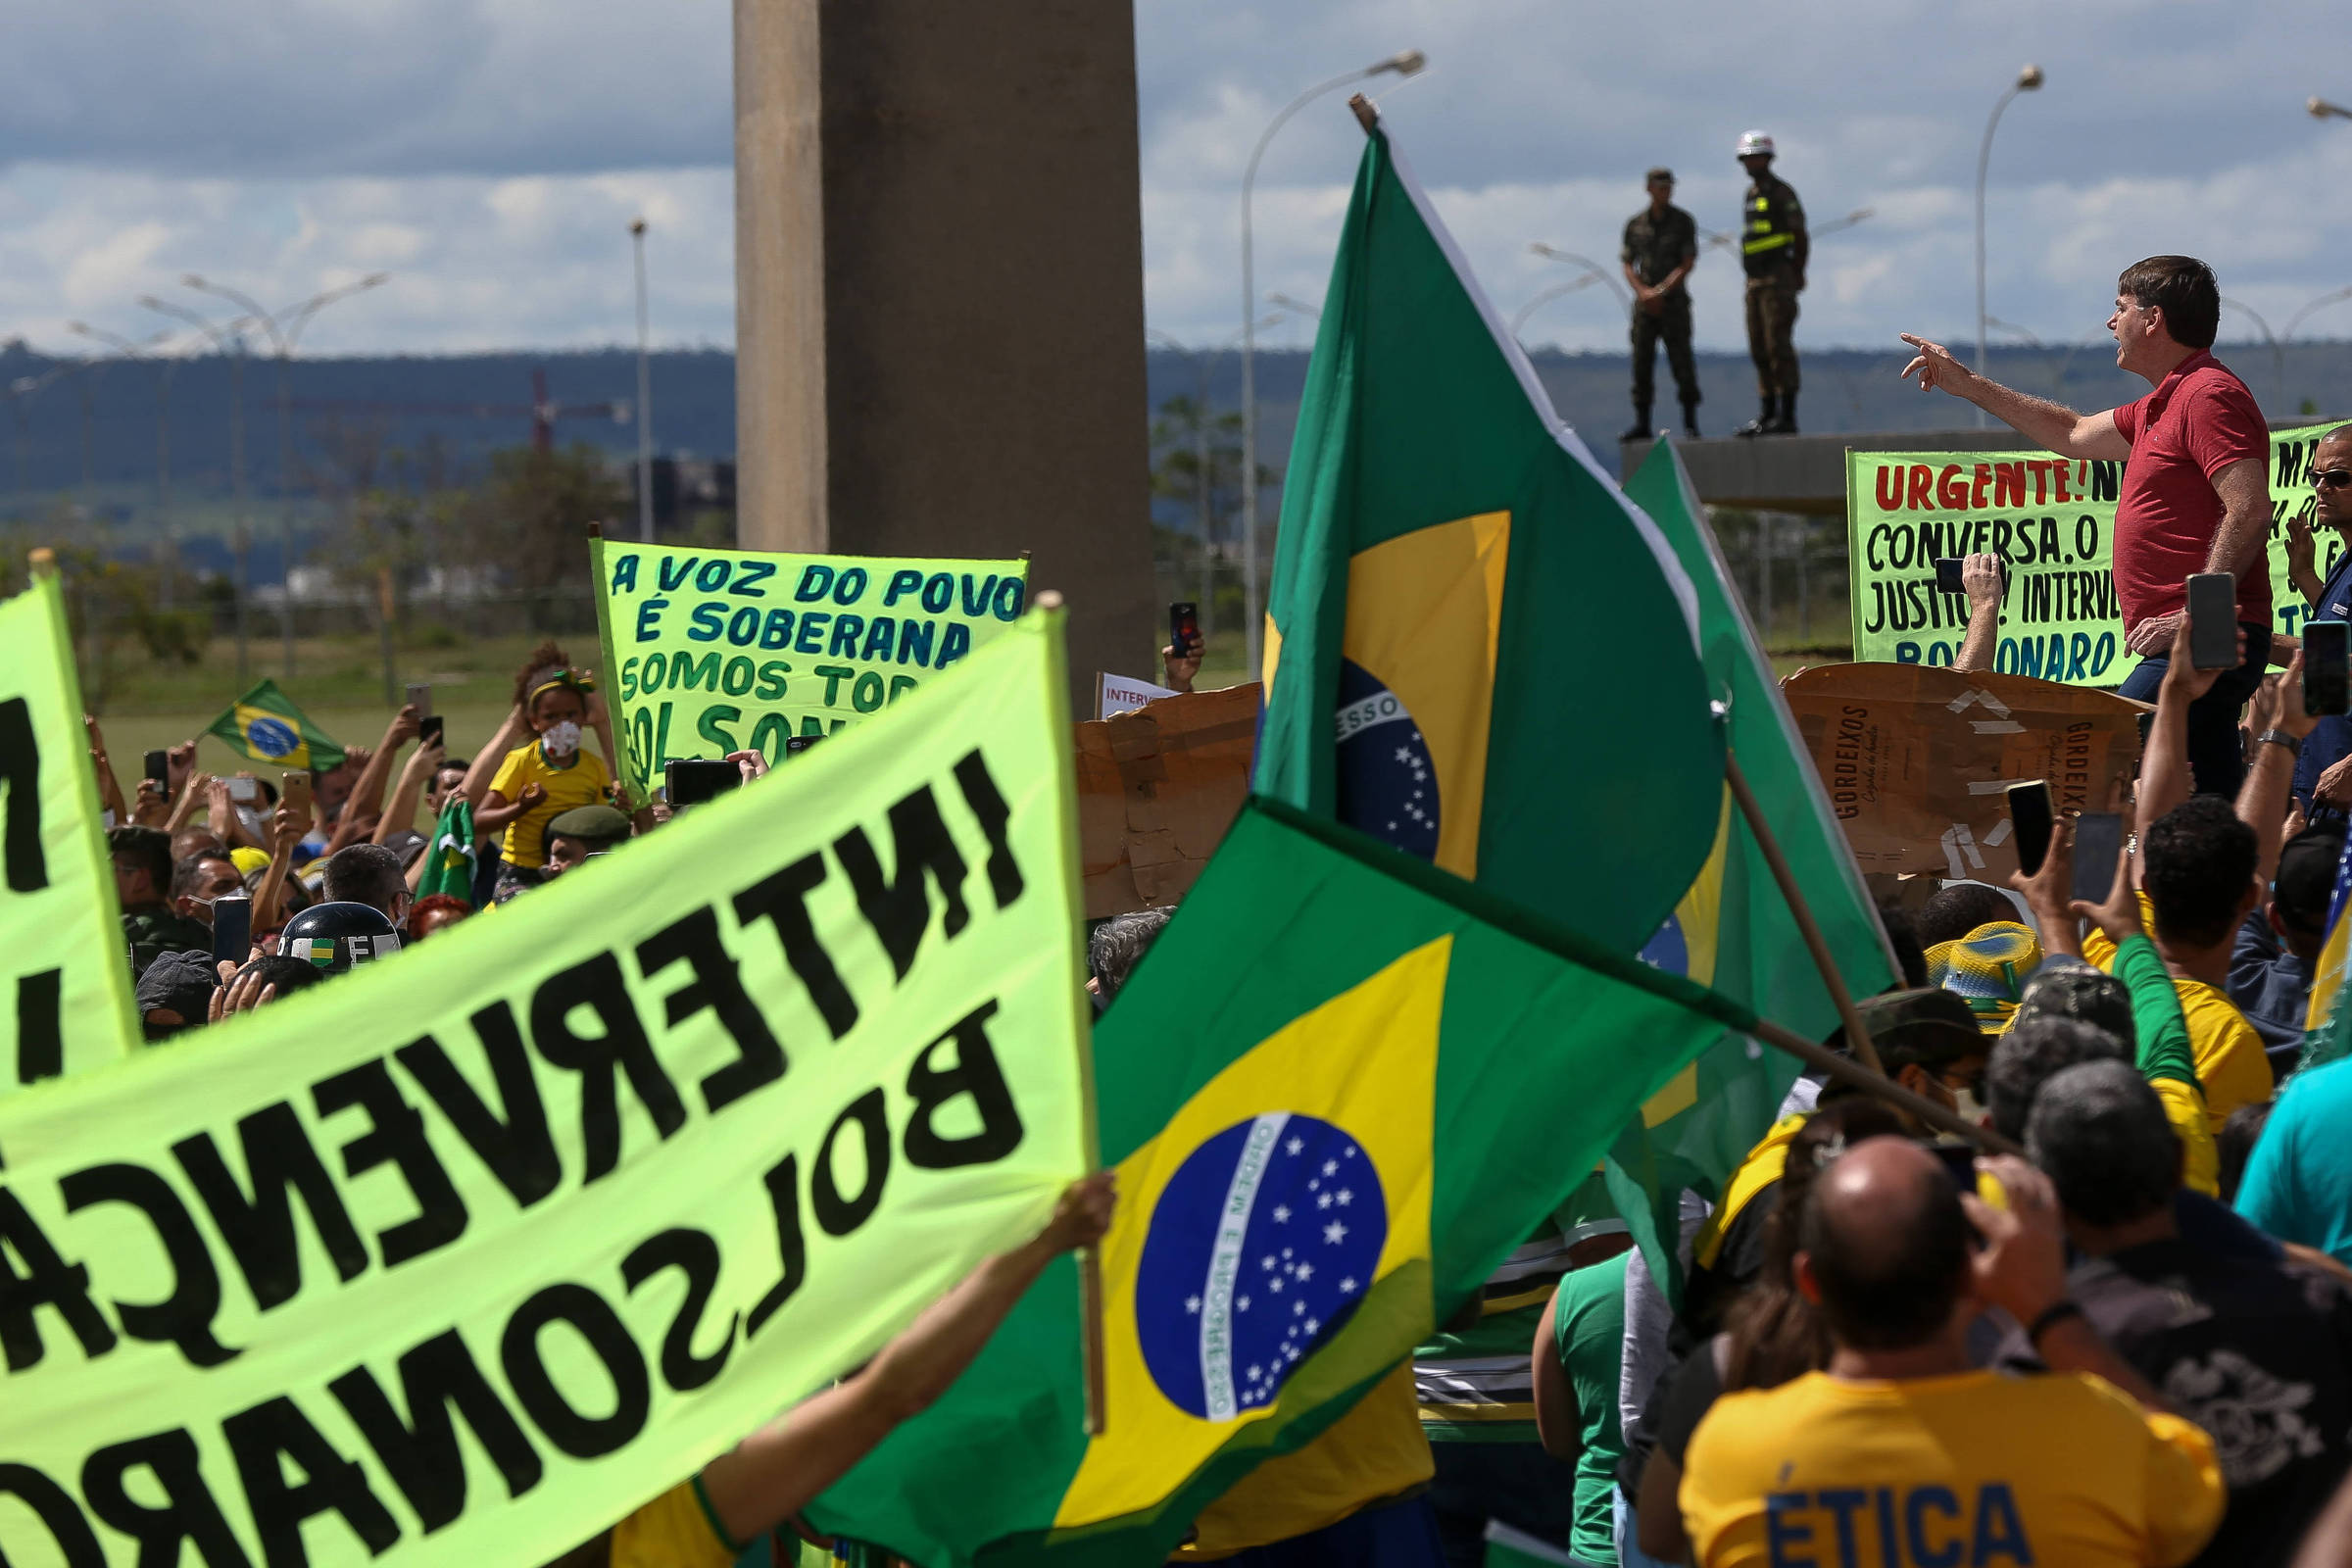 Juntos: manifesto reúne assinaturas de milhares de brasileiros a